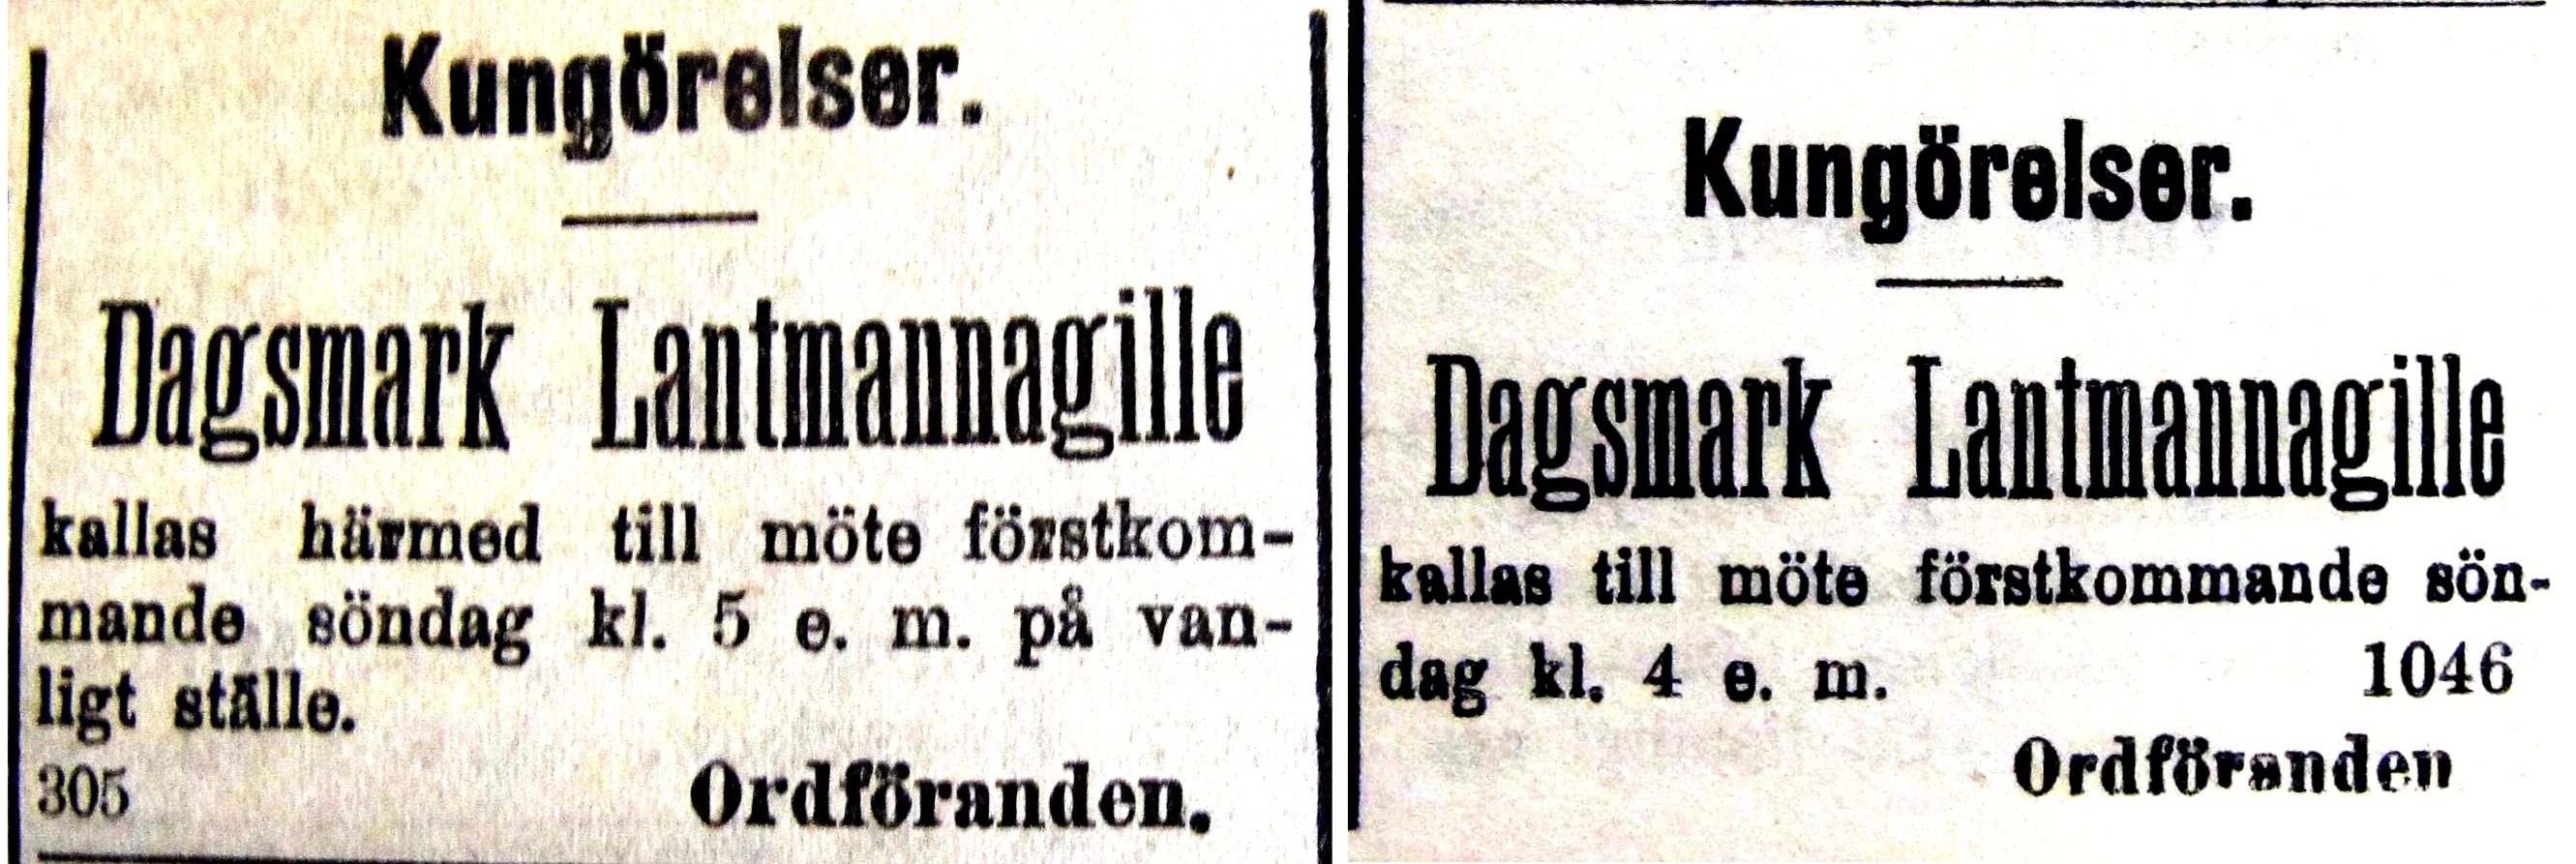 2 annonser från 1916.